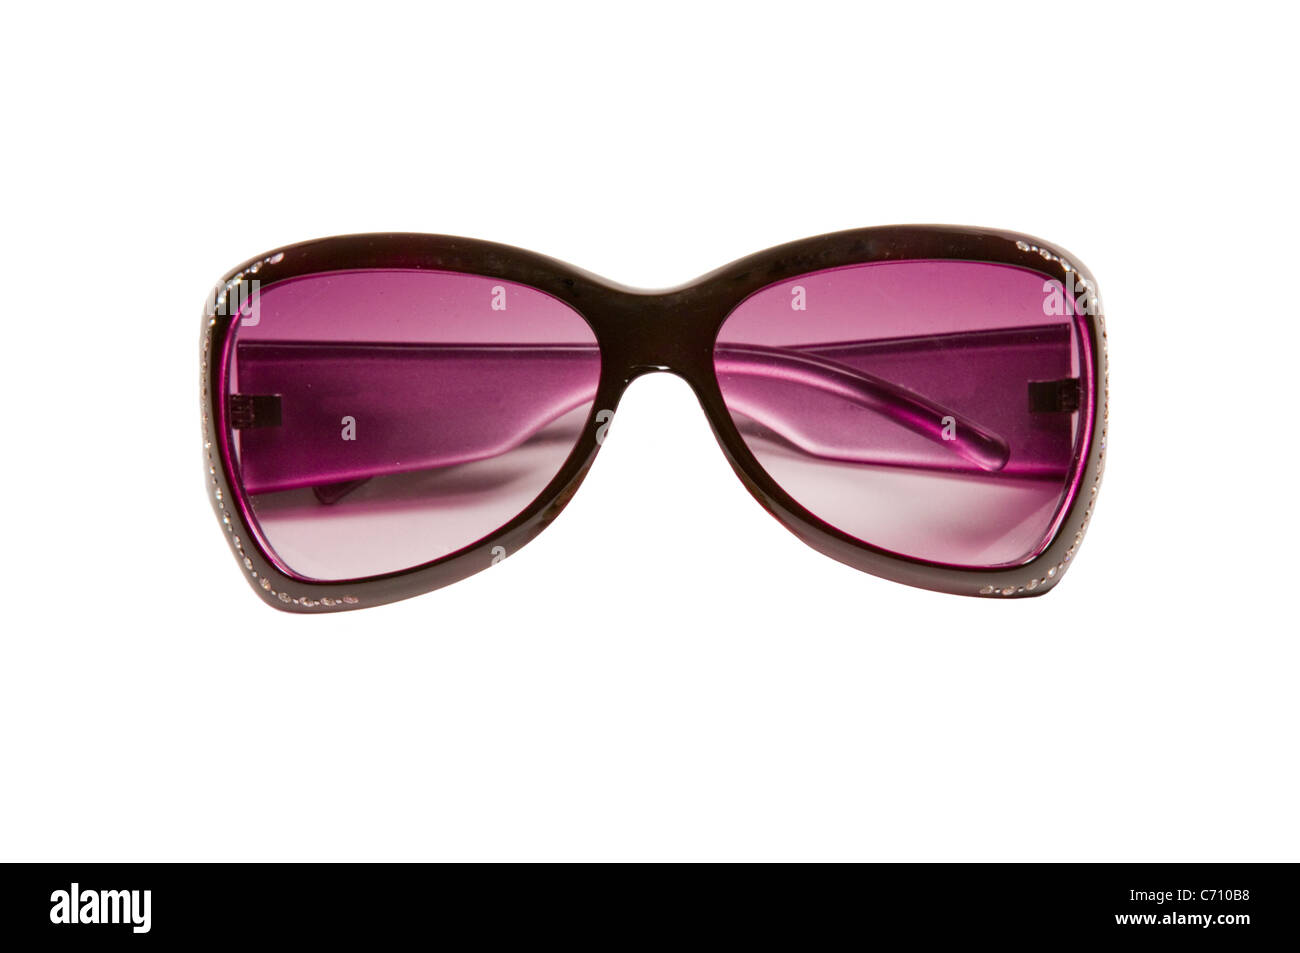 Les lunettes de soleil de couleur violet sur fond blanc Banque D'Images